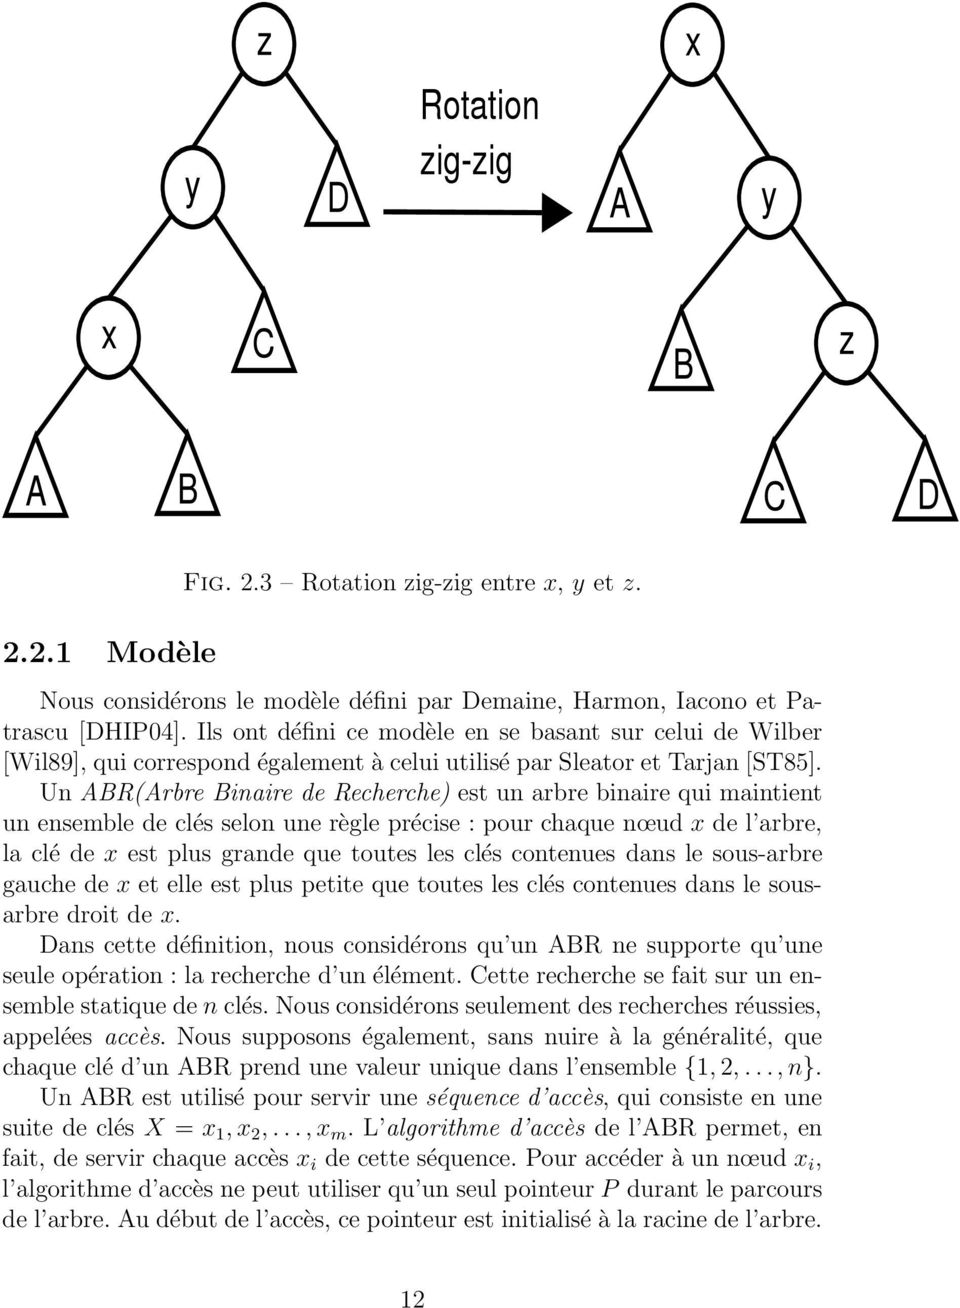 Un ABR(Arbre Binaire de Recherche) est un arbre binaire qui maintient un ensemble de clés selon une règle précise : pour chaque nœud x de l arbre, la clé de x est plus grande que toutes les clés